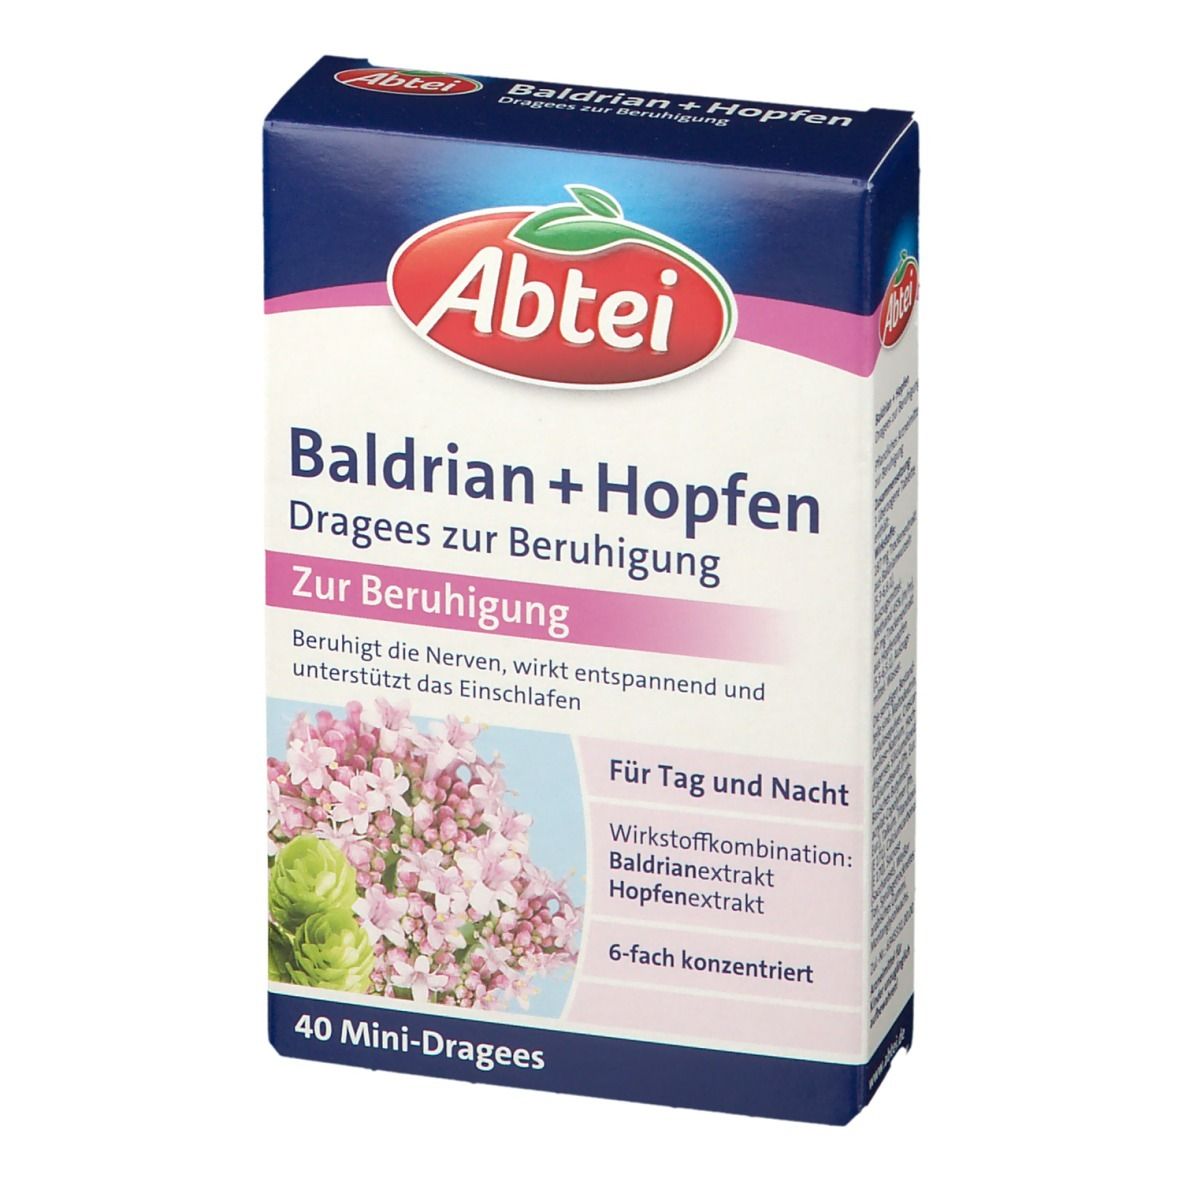 Abtei Baldrian + Hopfen Dragees zur Beruhigung